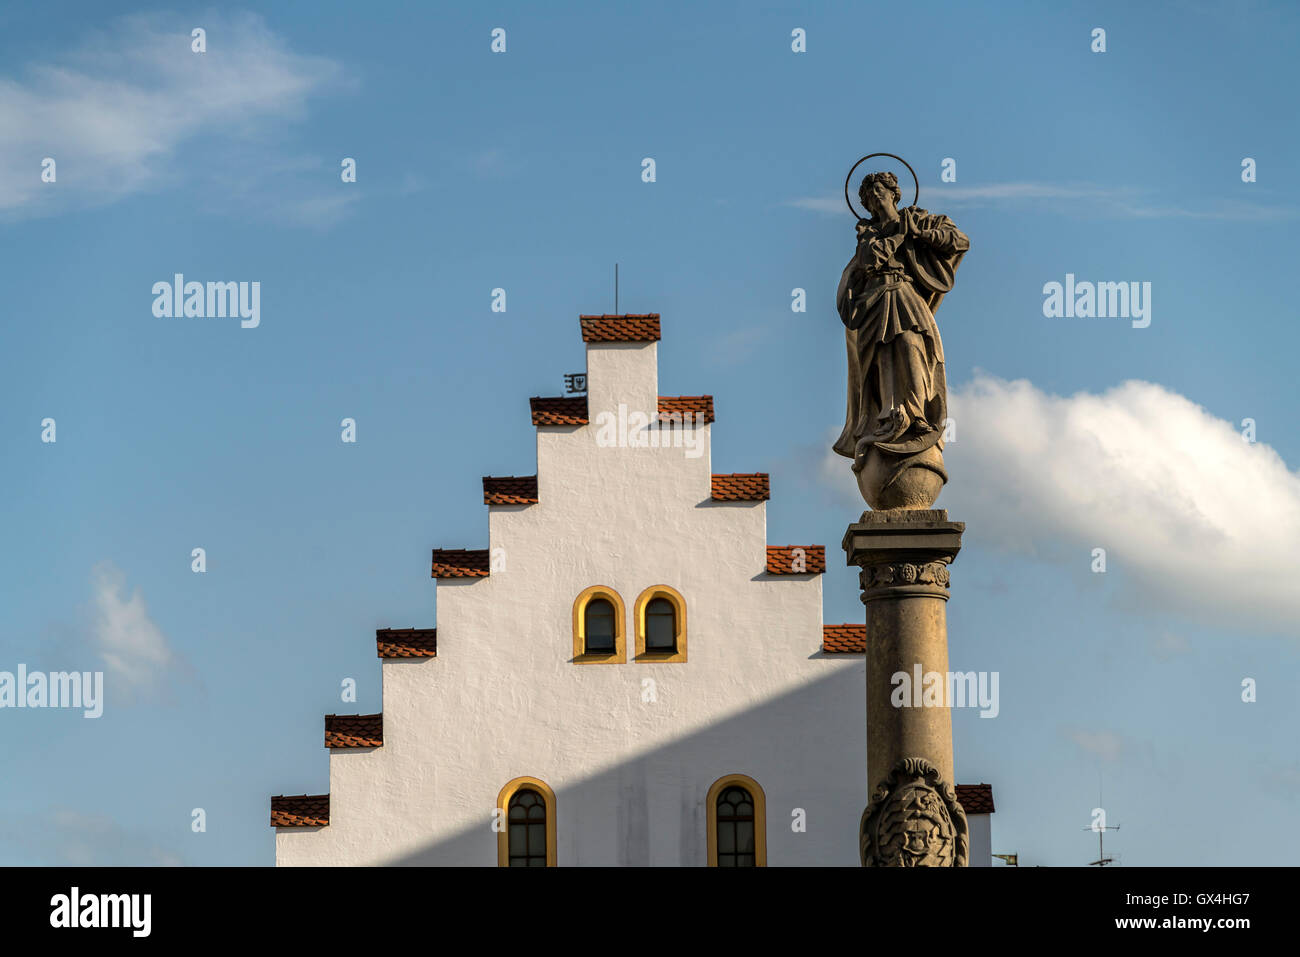 Statue Maria und das Ballenhaus  in der historischen Altstadt in Schongau, Oberbayern, Bayern, Deutschland, Europa | Statue of M Stock Photo